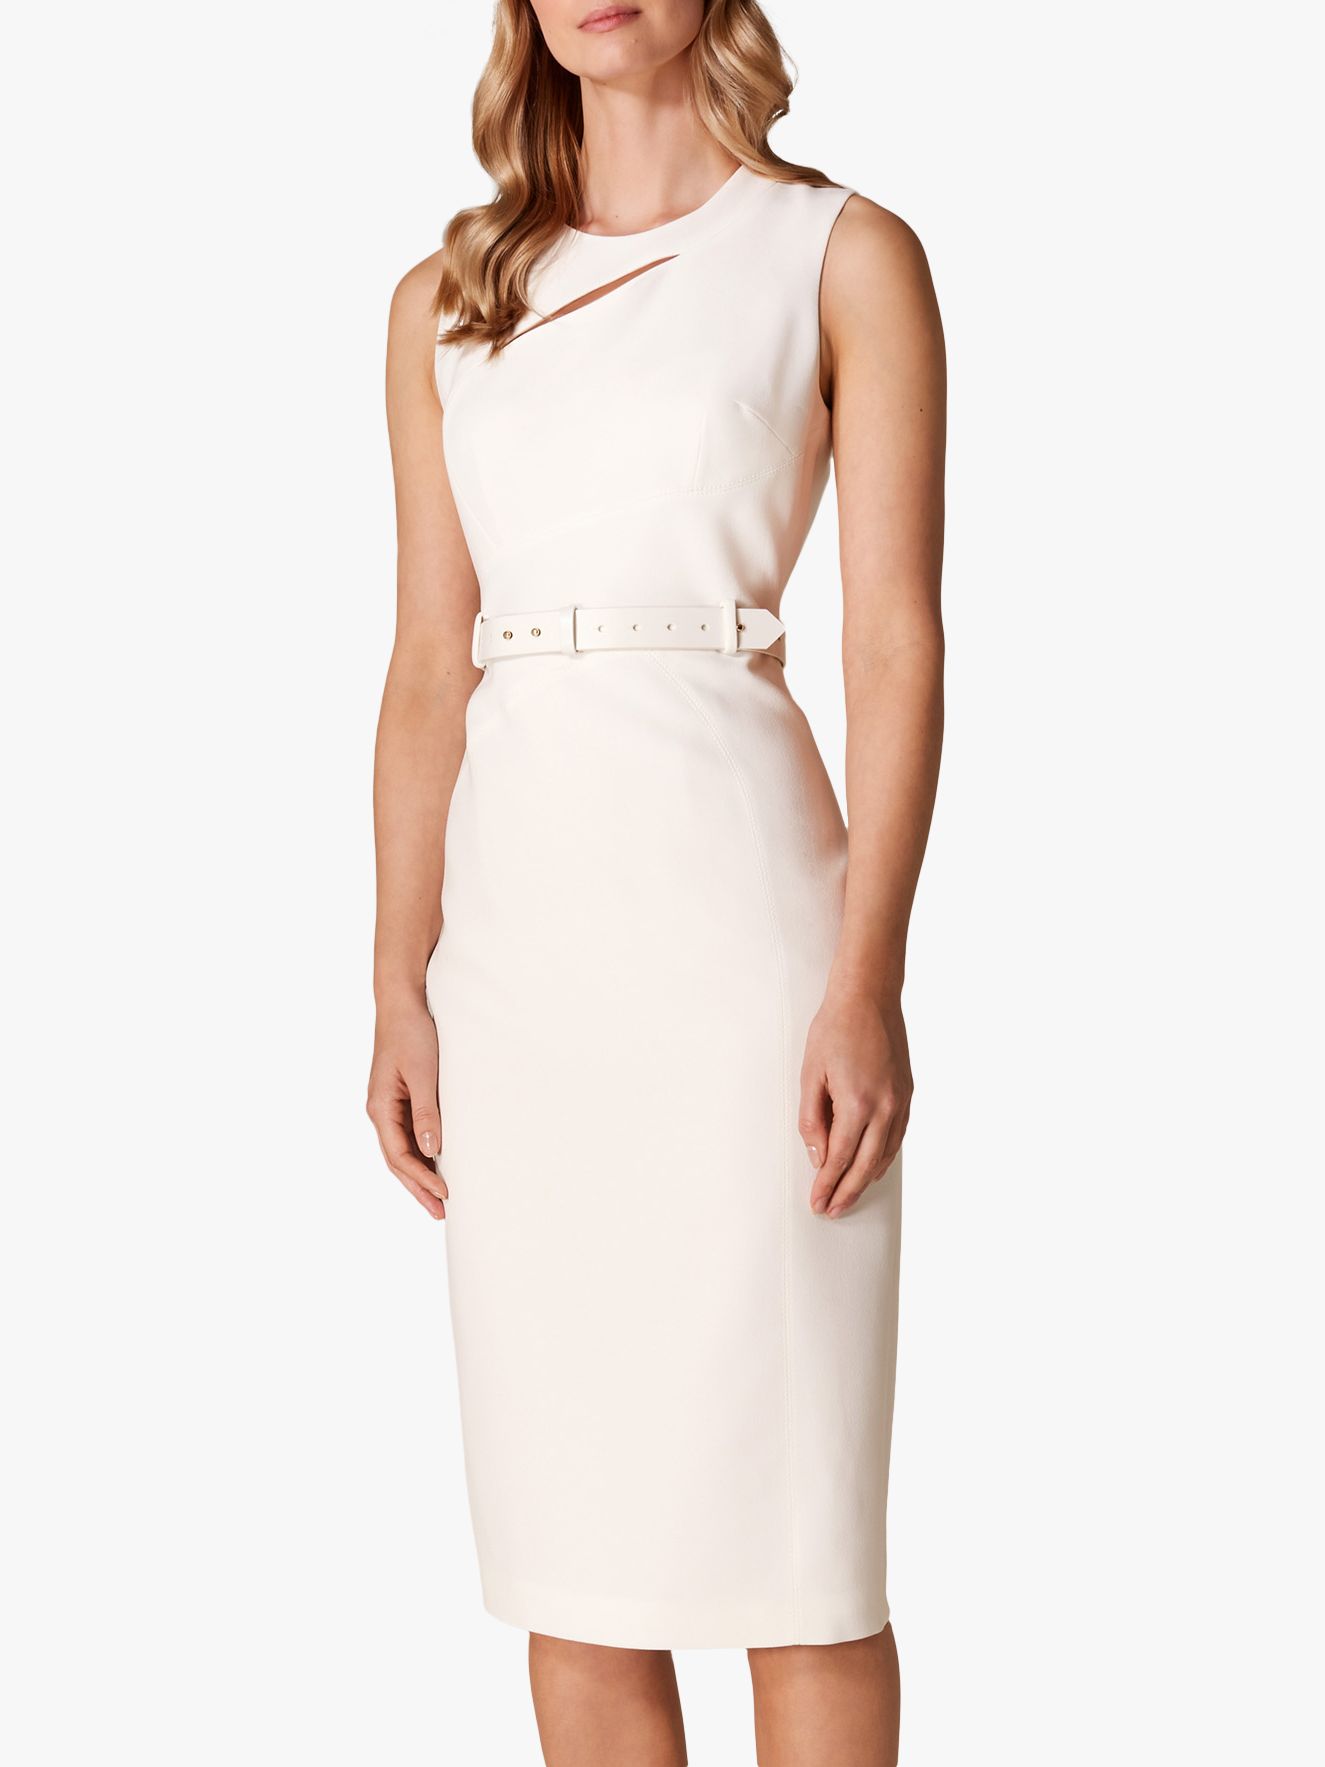 Karen Millen Slashed Neckline Dress, Ivory at John Lewis & Partners